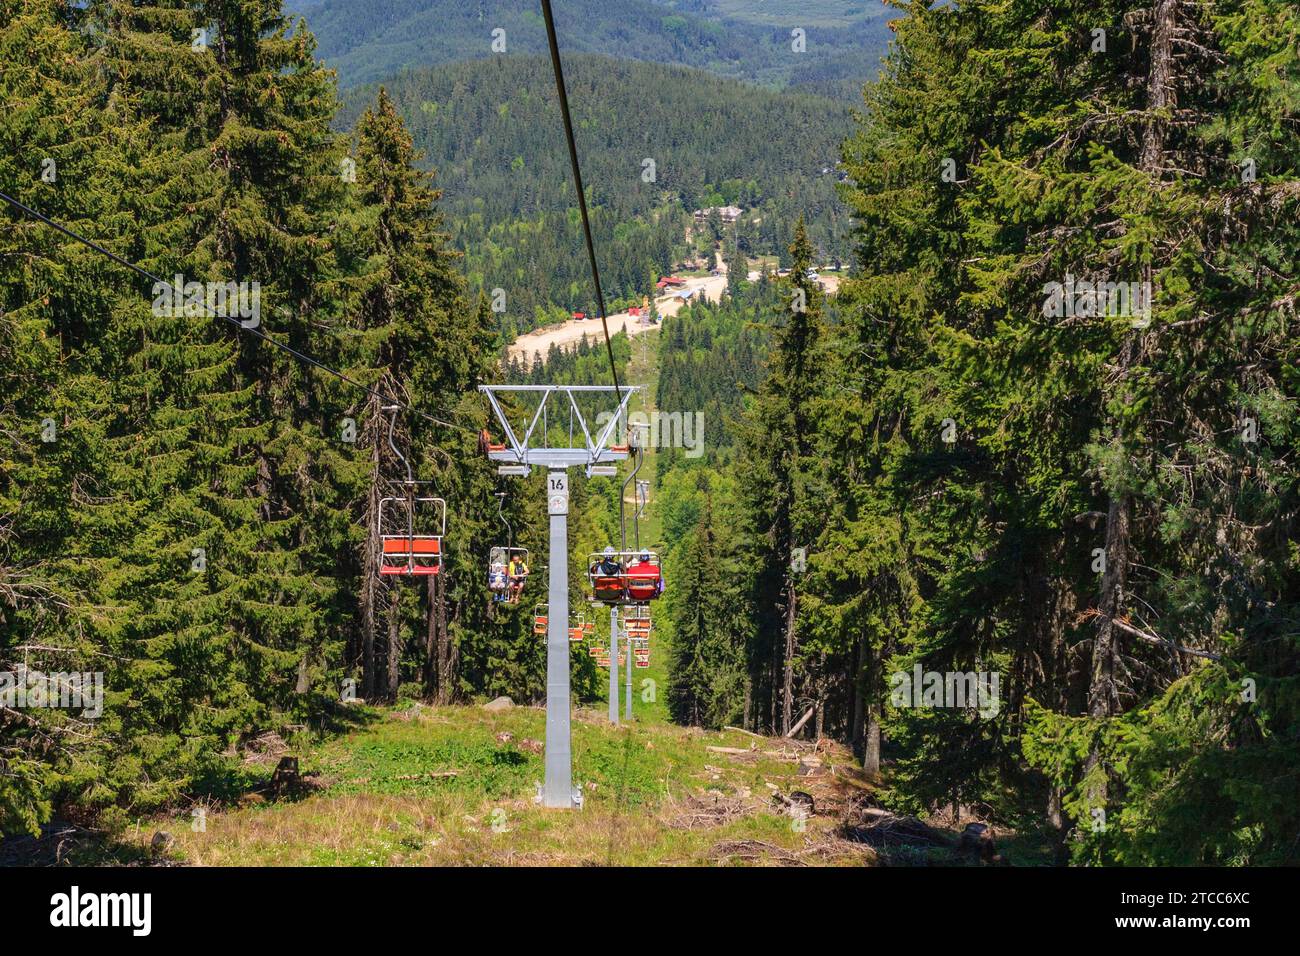 Dobrinishte, Bulgarie, 28 mai 2016 : printemps de montagne, paysage d'été avec télésiège Dobrinishte près de Bansko Banque D'Images